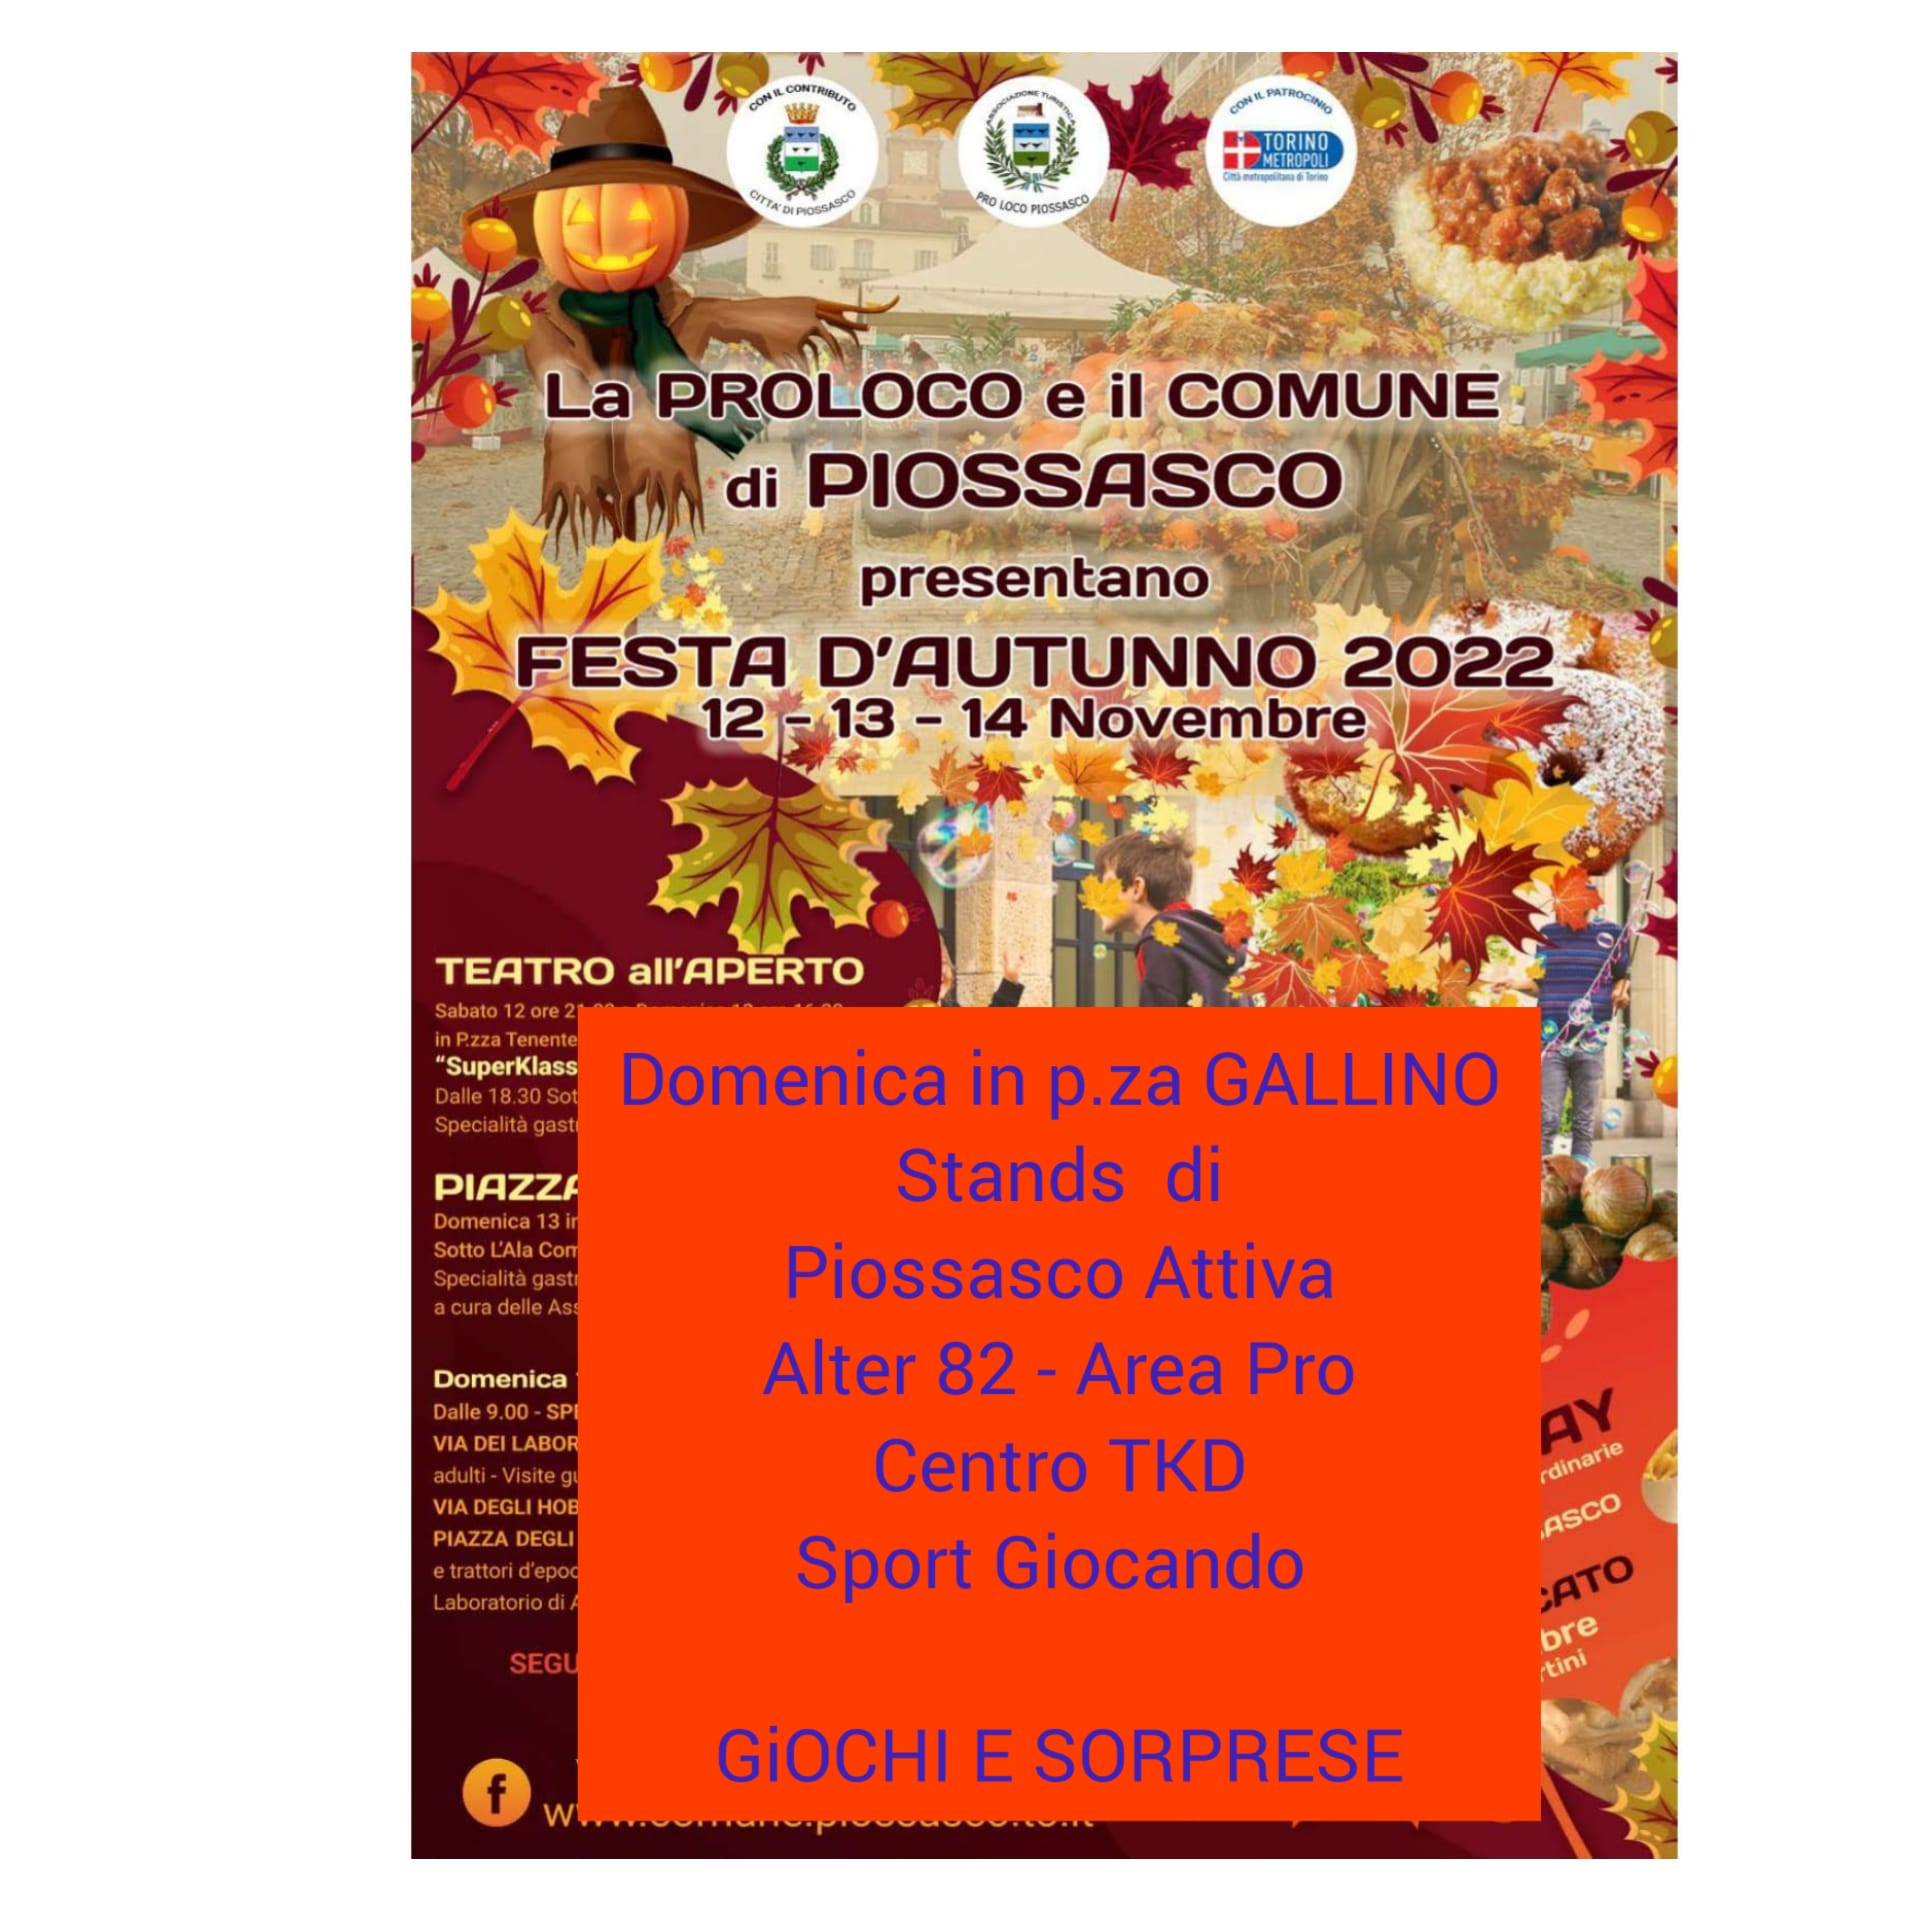 Festa d’autunno domenica 12 nov 2022 p.za Baudino, stands di: Piossasco Attiva, Alter’82, AreaPro2020,Centro TDK, Sport Giocando